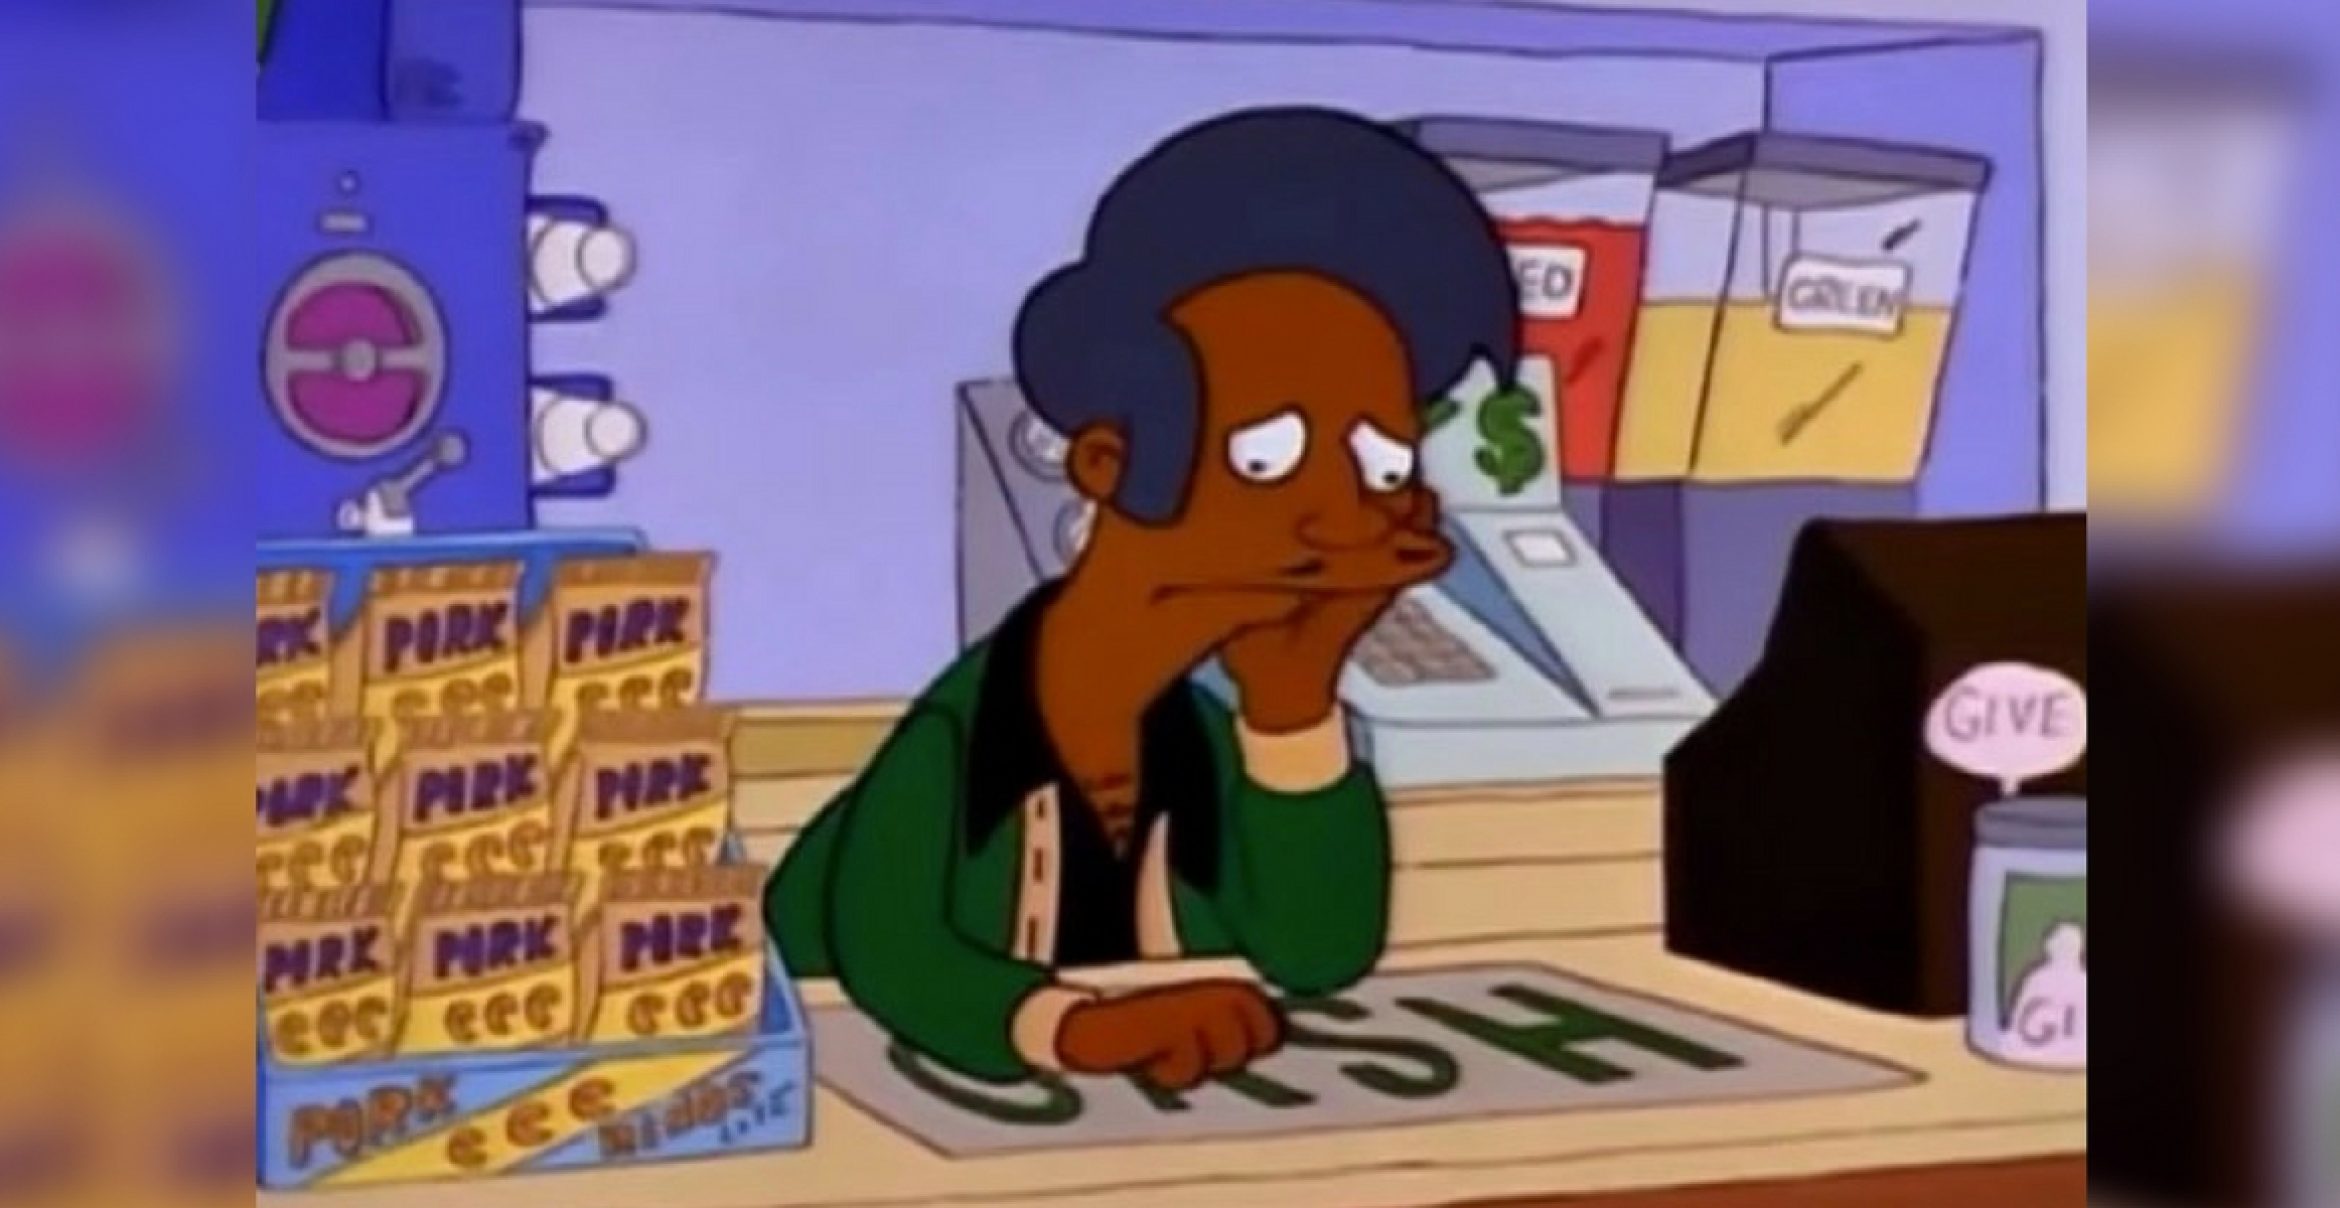 Wirbel um “The Simpsons“: Ist die Figur Apu ein rassistisches Stereotyp?